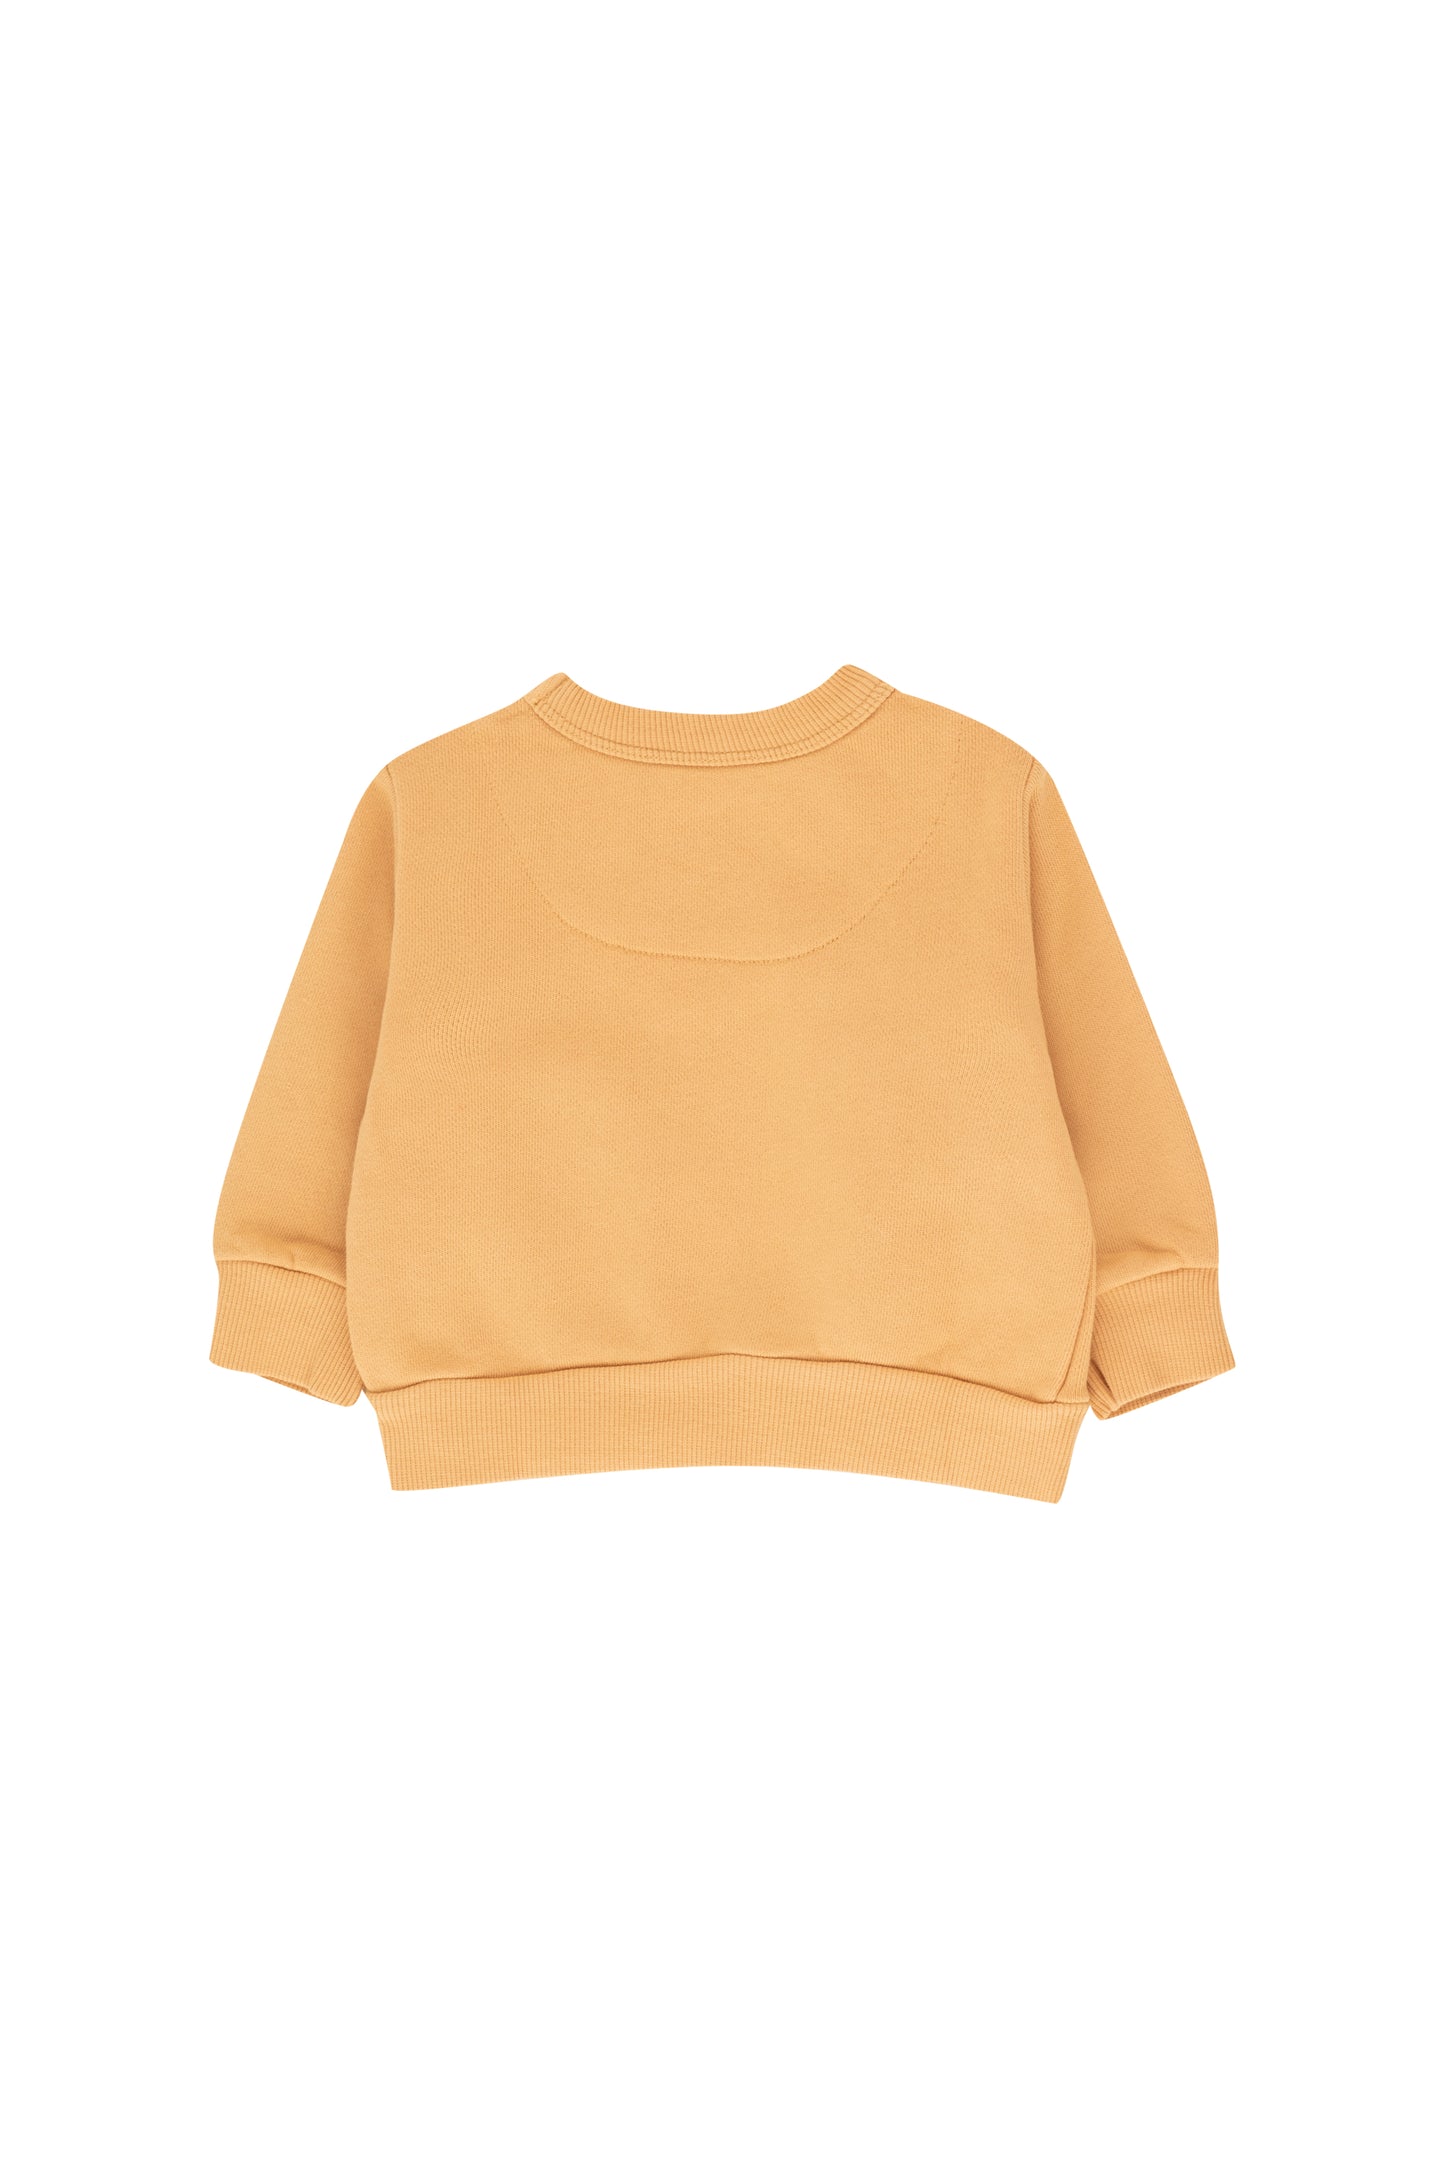 Tangerine baby sweatshirt